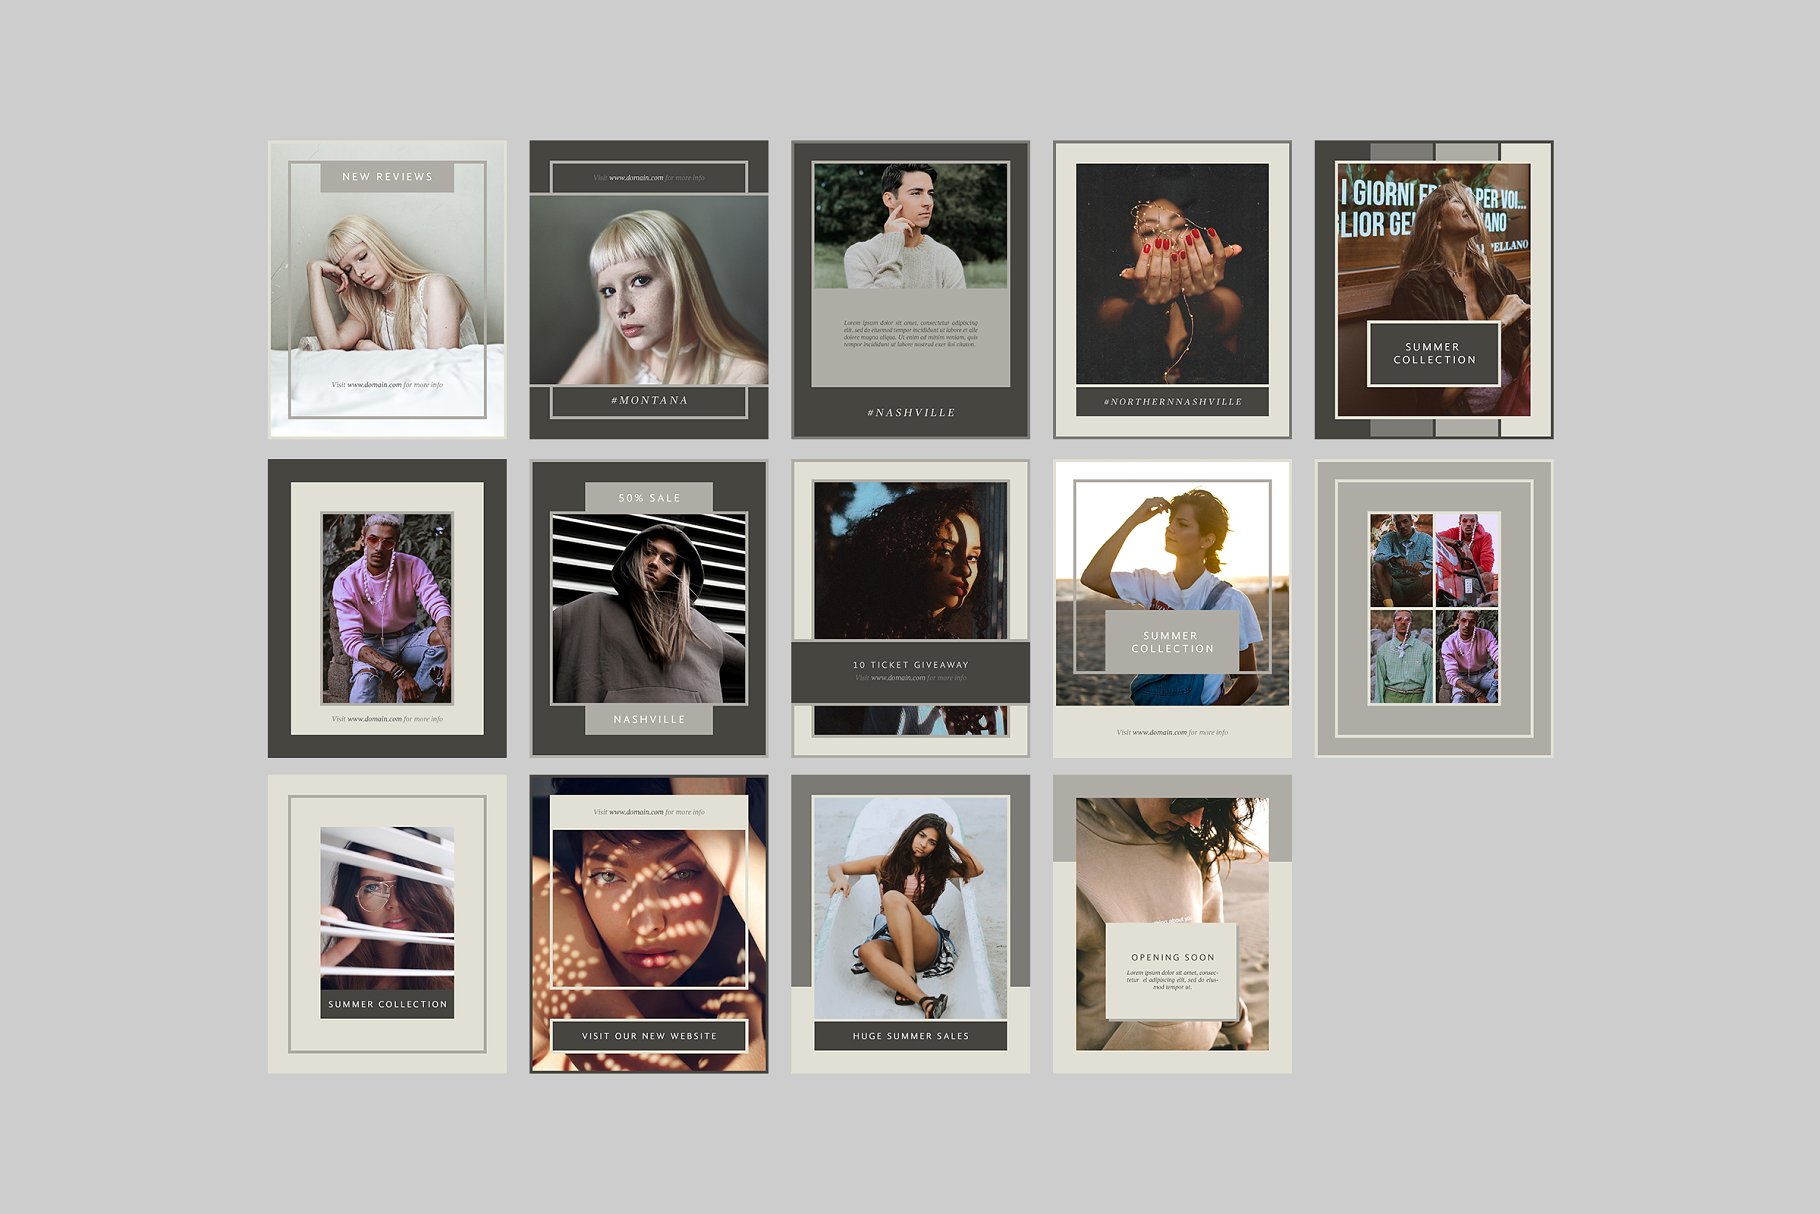 时尚模特摄影主题社交媒体贴图模板16设计网精选 Nashville Social Media Templates插图(7)